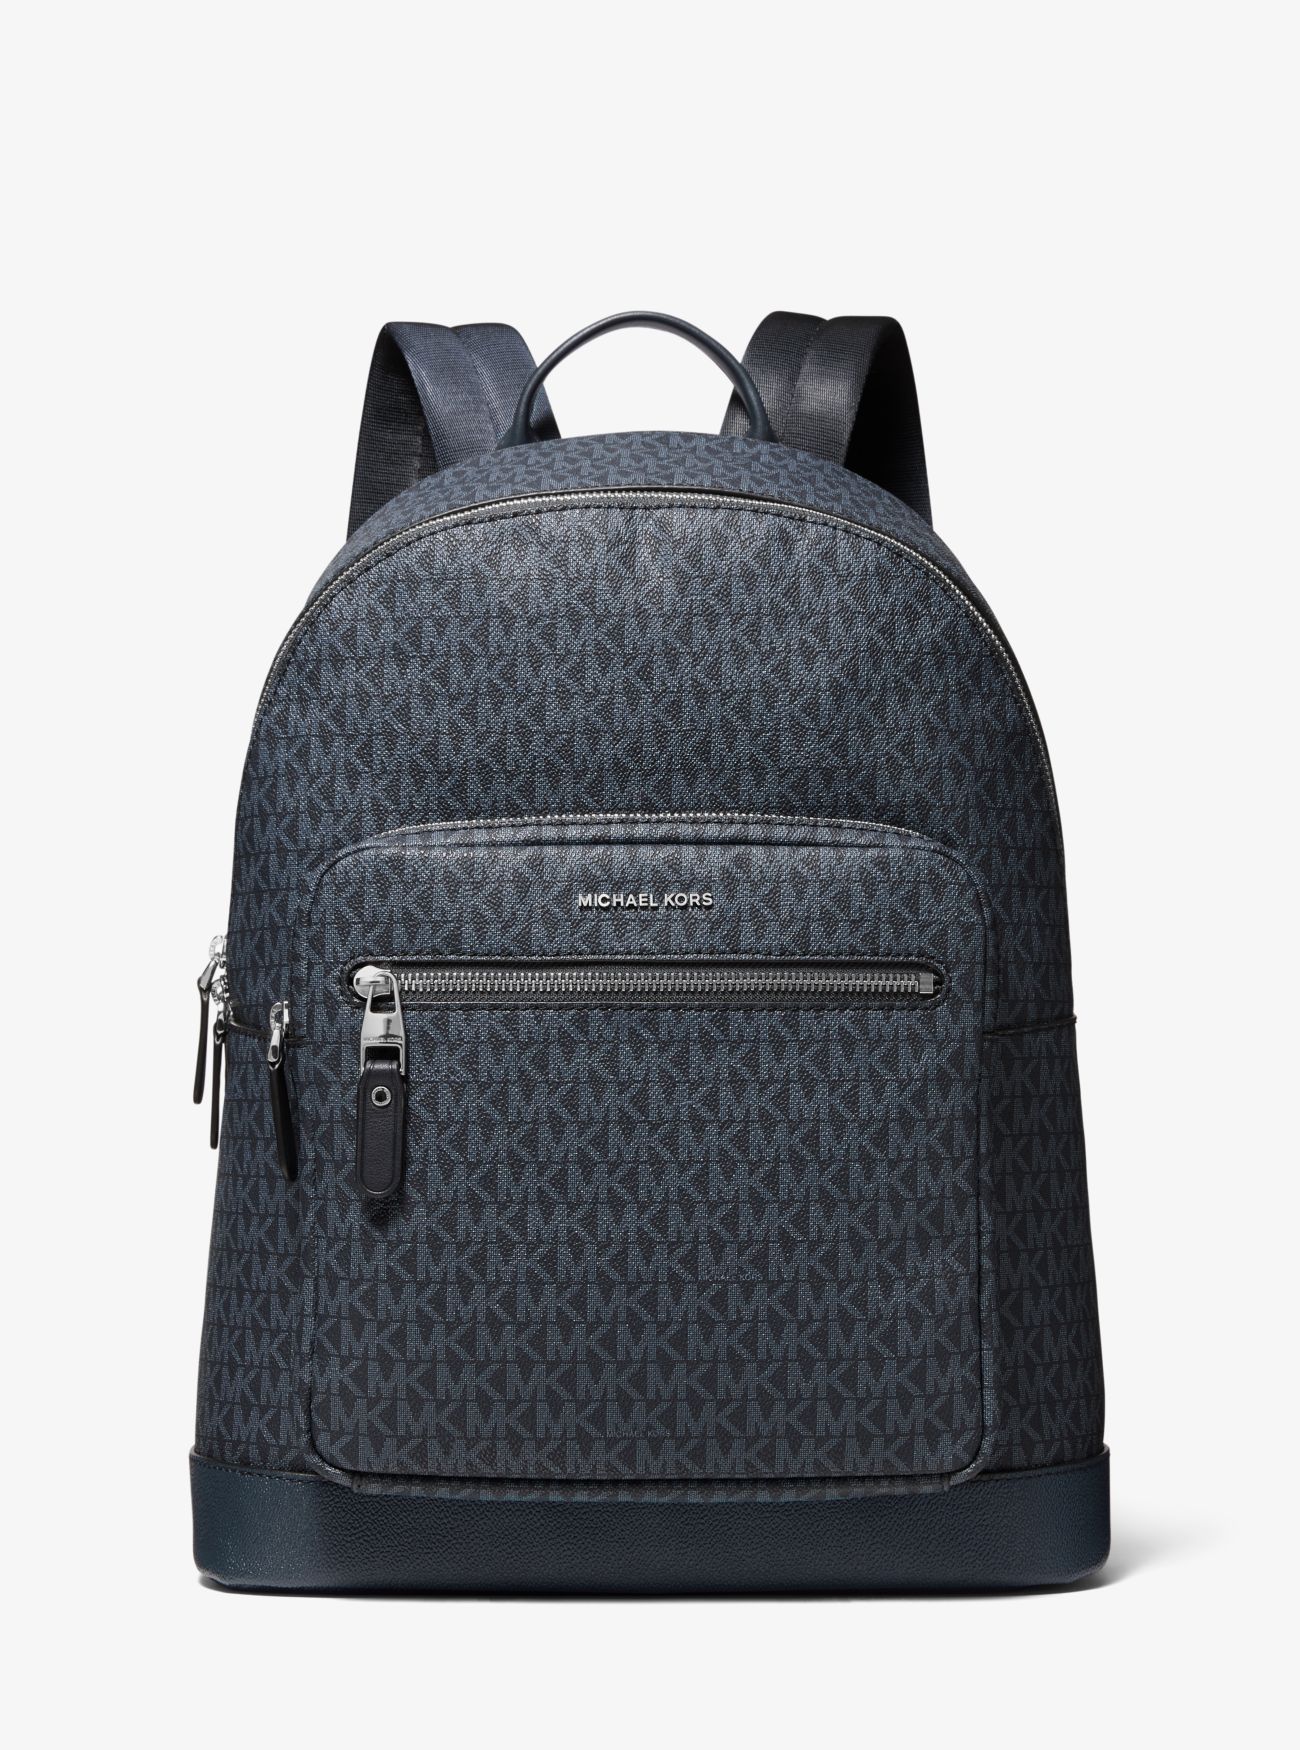 MK Hudson Logo Backpack - Blue - Michael Kors